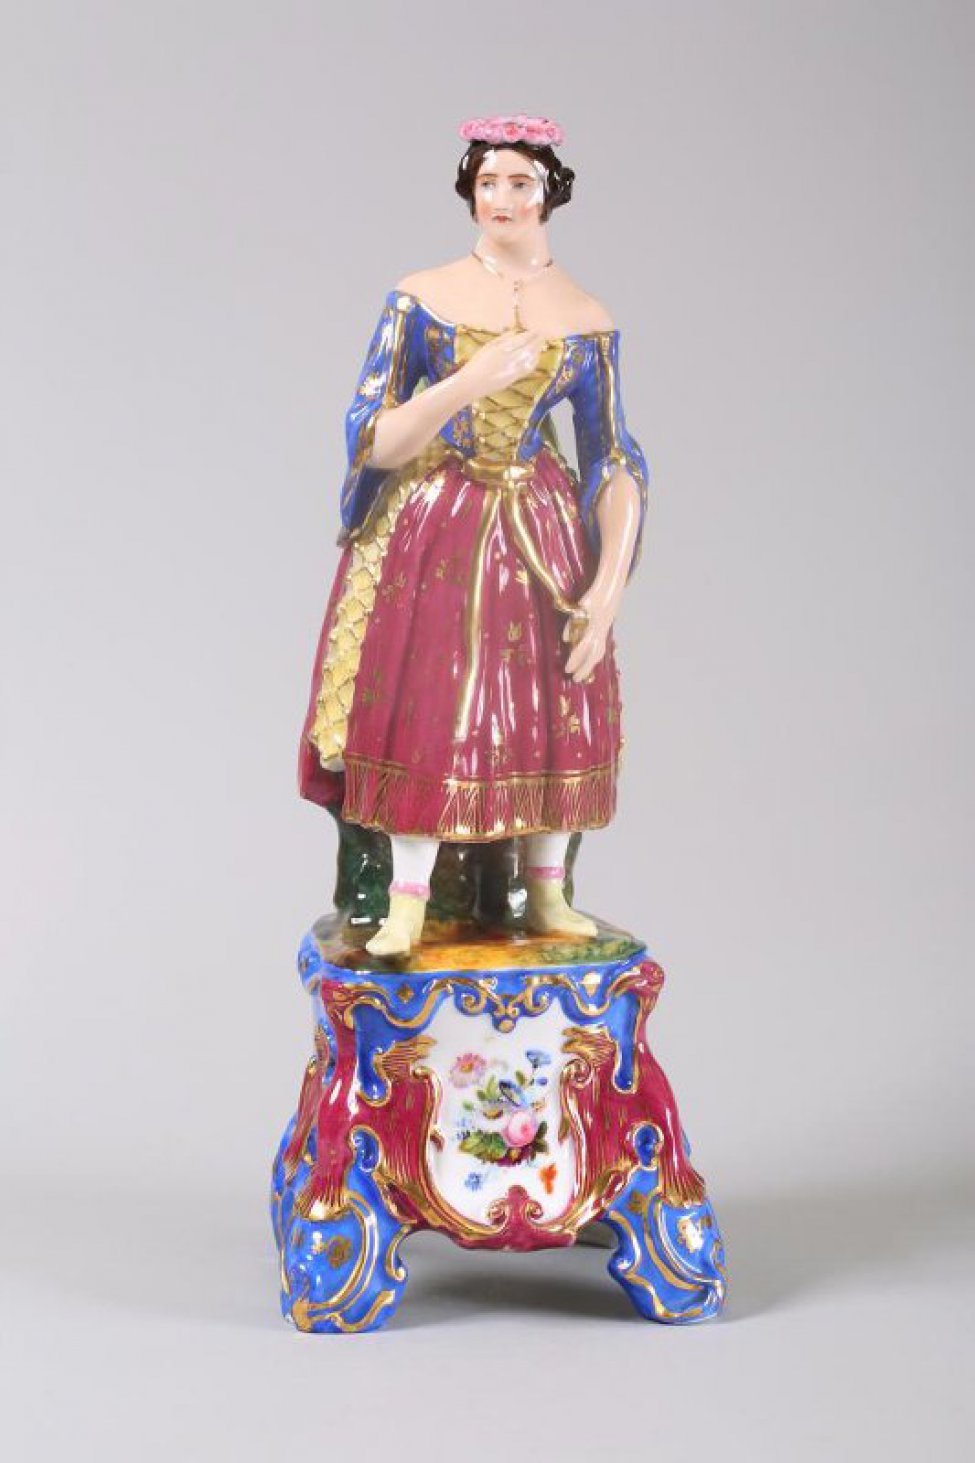 На высоком постаменте изображена стоящая женщина с прижатой к груди рукой,  в испанском костюме 50-х годов 19 века. На голове женщины венок с лентой; одета в синюю, с желтой вставкой,  блузку, и красную, с желтыми вставками, юбку.  На постаменте белый медальон с изображением цветов.